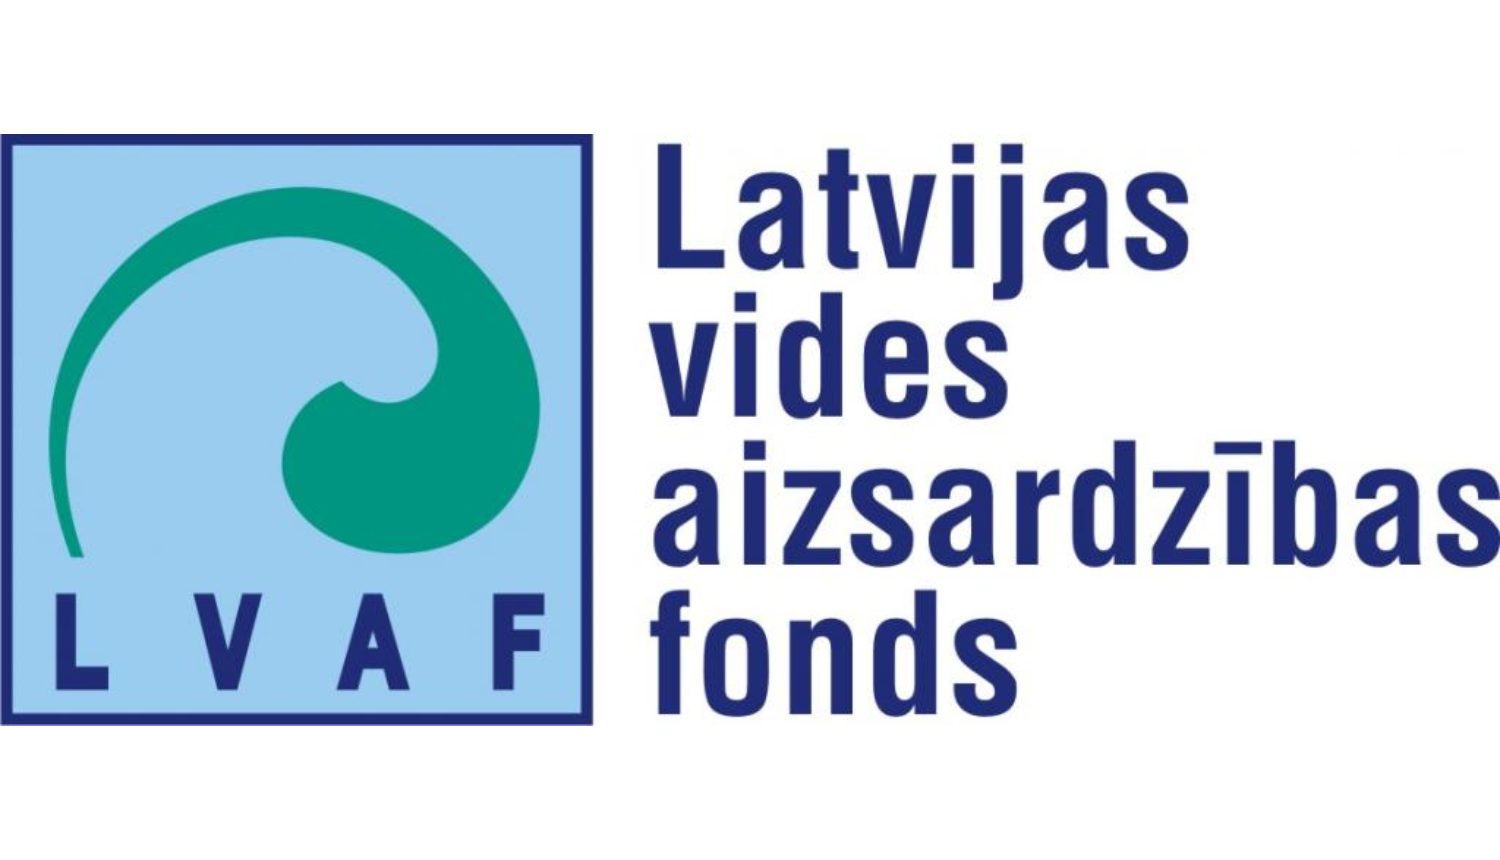 LVAF logo